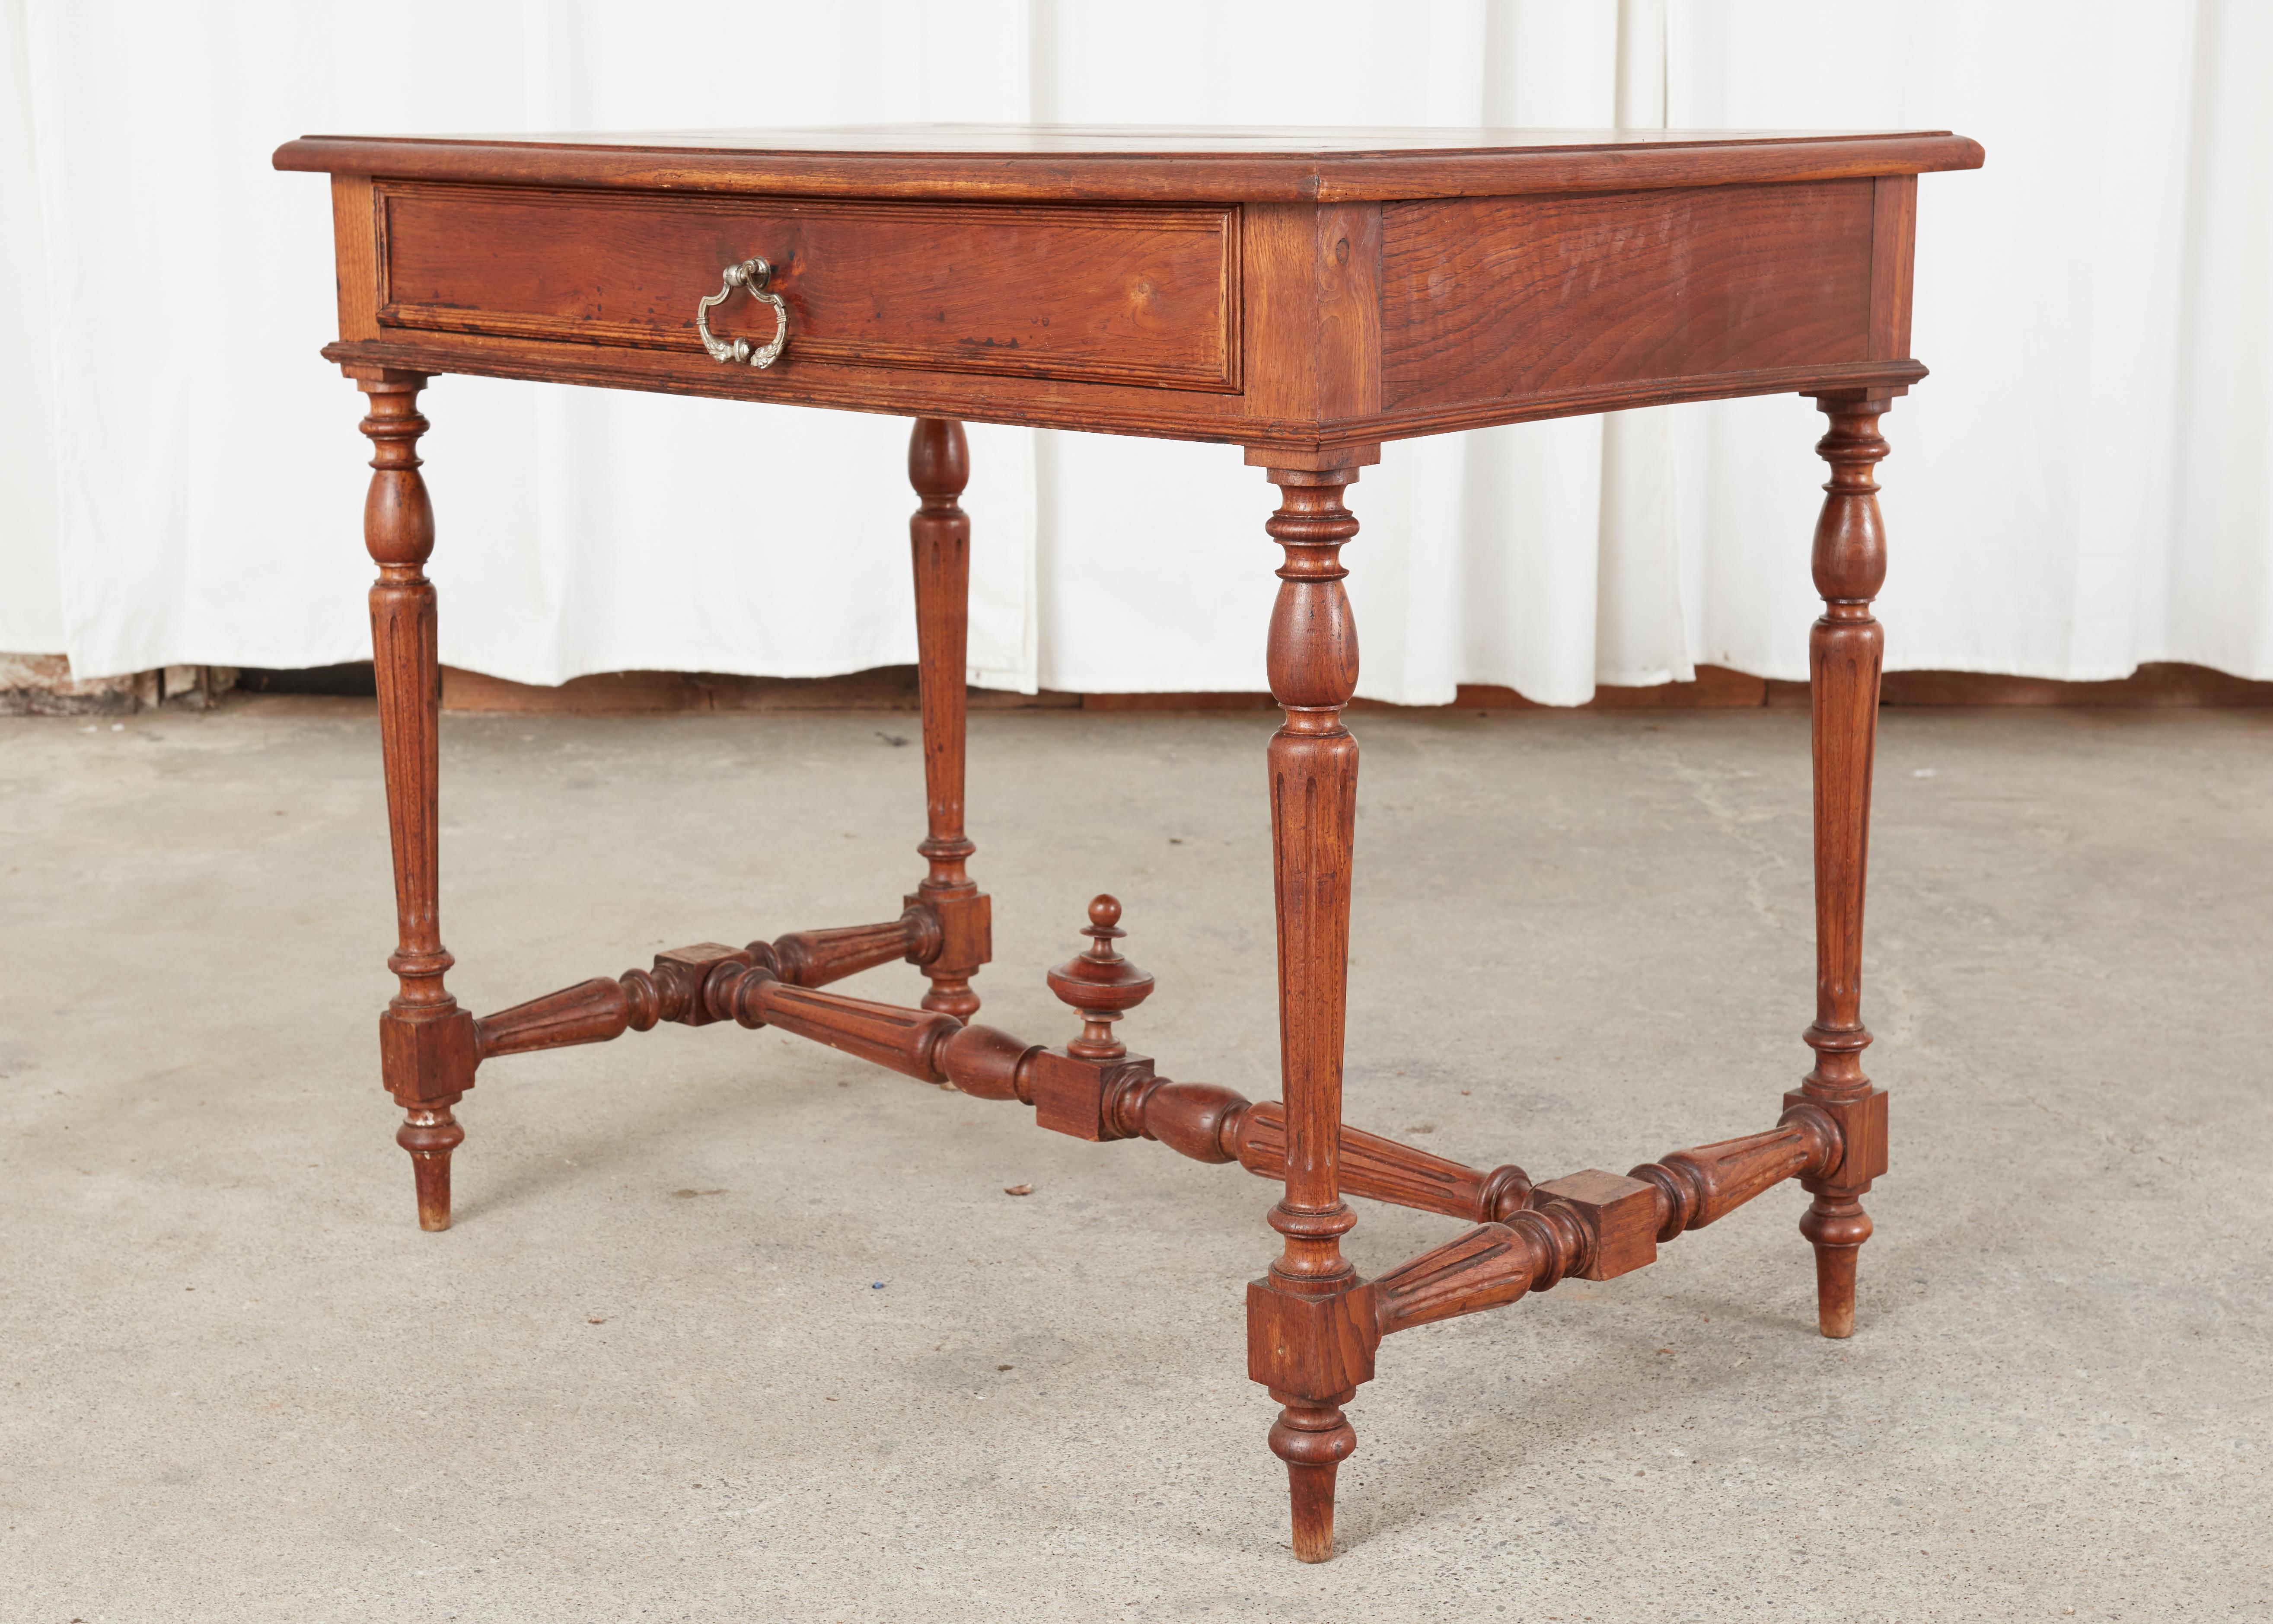 Tavolino o scrivania provinciale francese del XIX secolo di dimensioni ridotte. Il tavolo è costruito in legno di frutta con una patina calda e deliziose venature del legno. Dotata di un cassetto singolo nella parte anteriore, la cassa è sostenuta